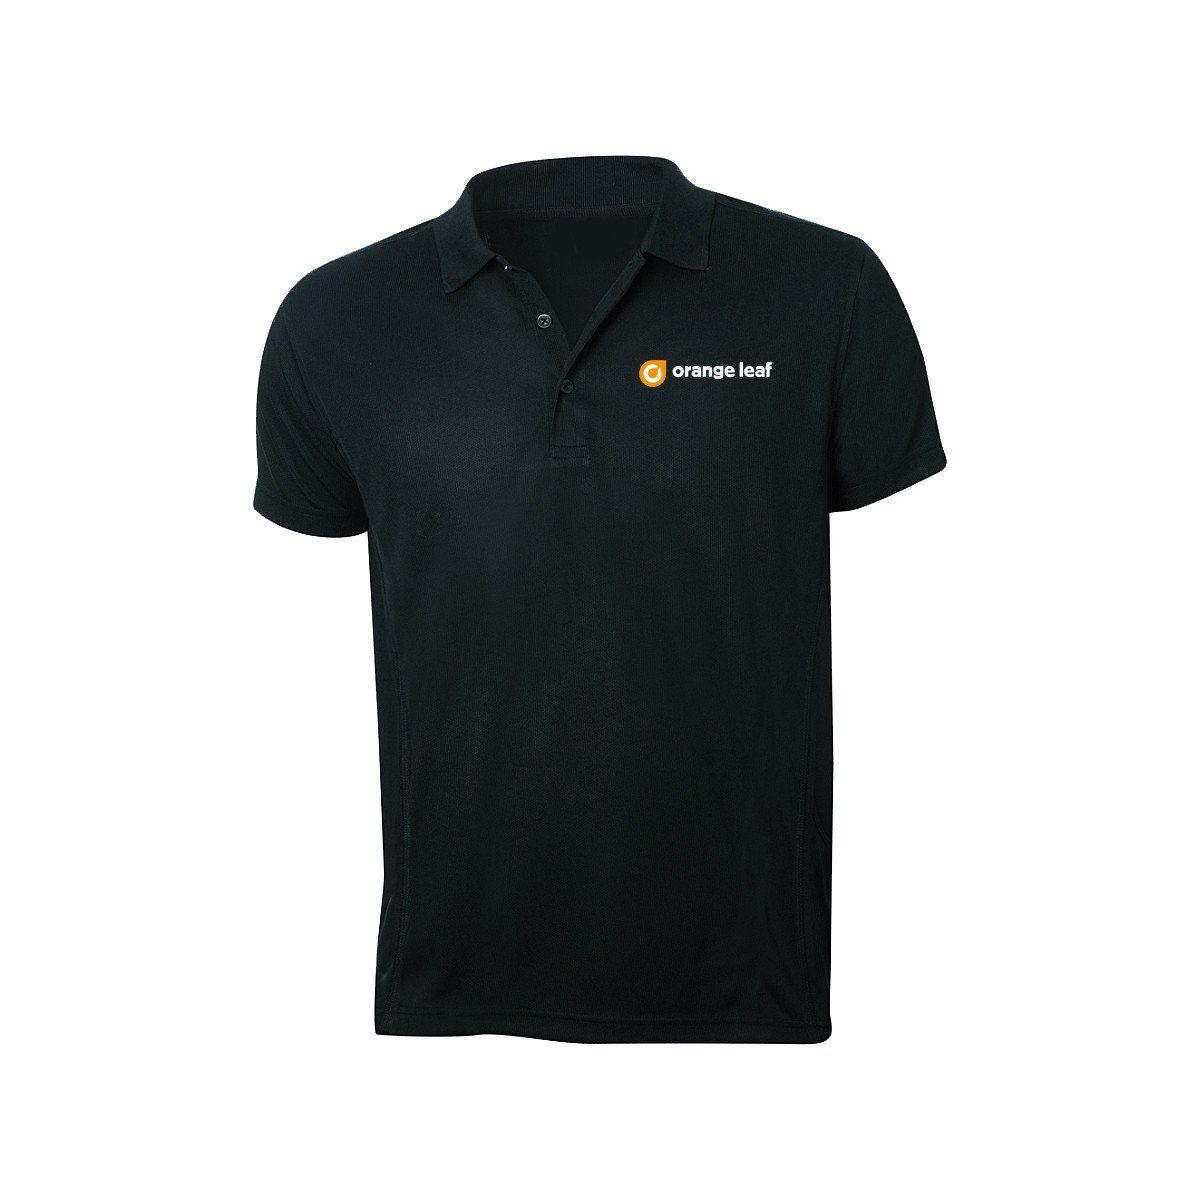 Oragne Leaf Logo - Orange Leaf Austin Uniform Store - Employee Logo Polo (Black) - Bandwear